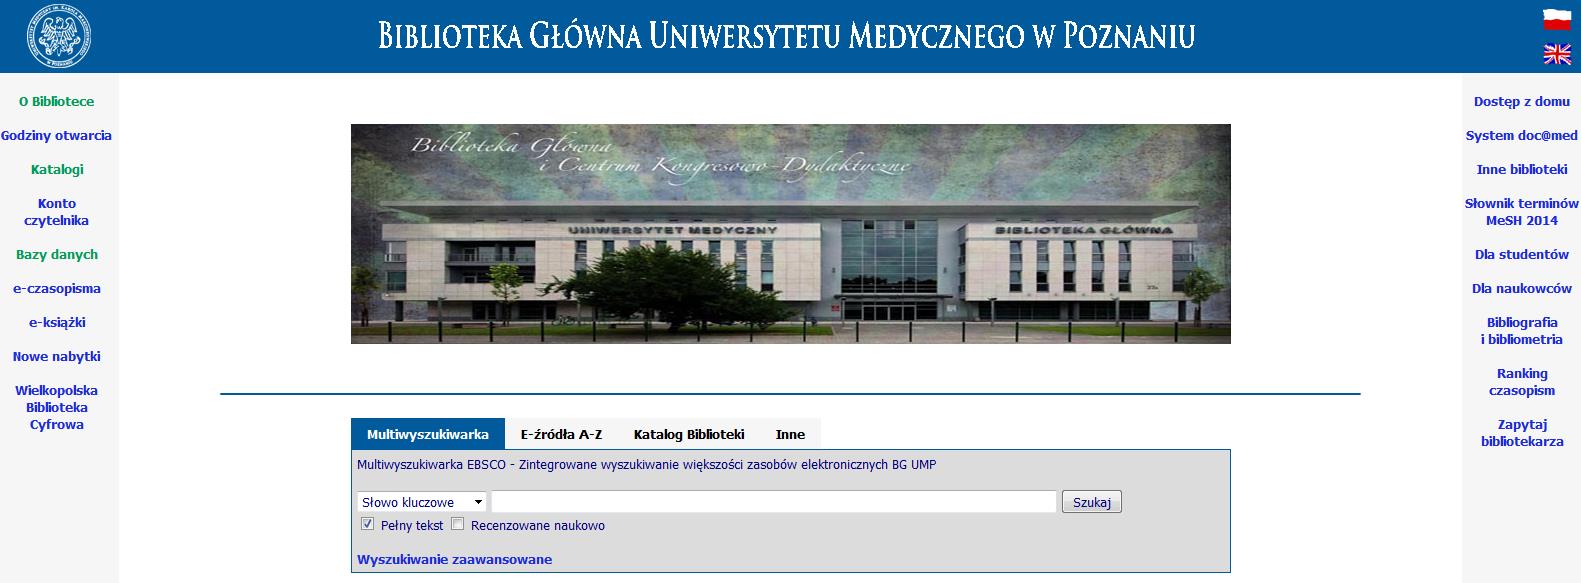 Multiwyszukiwarka EDS daje możliwość przeszukania większości baz udostępnianych przez Bibliotekę Główną Uniwersytetu Medycznego w Poznaniu.